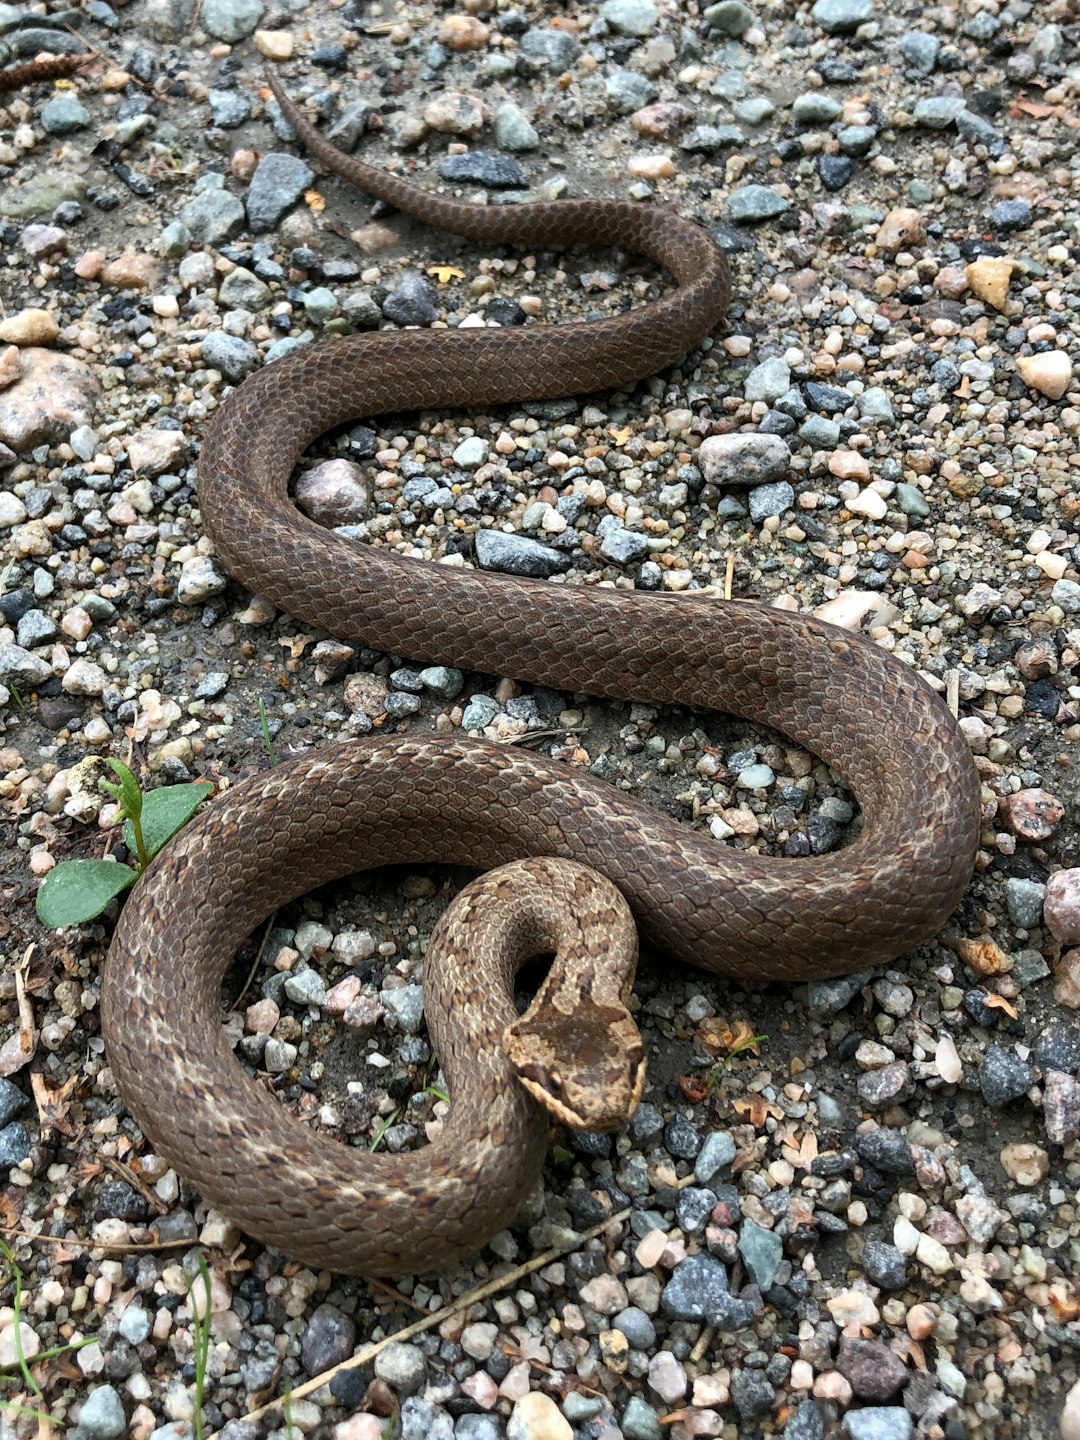  gray snake n gravel snake